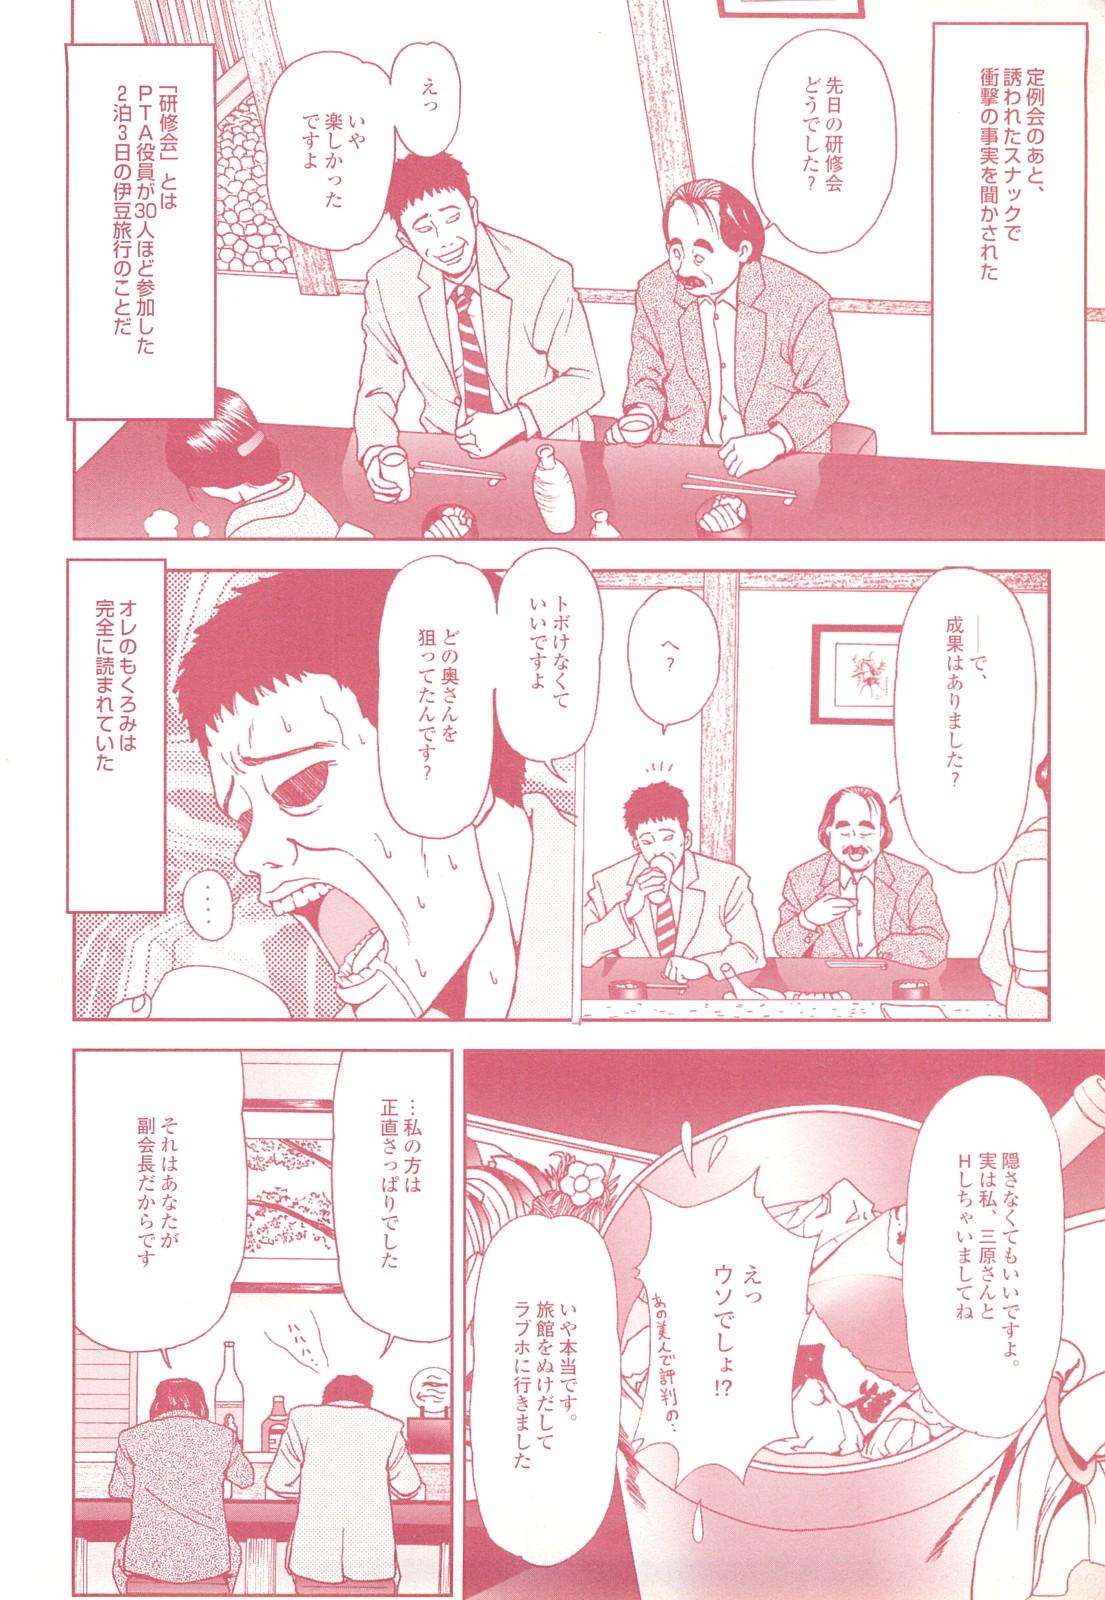 コミック裏モノJAPAN Vol.18 今井のりたつスペシャル号 113